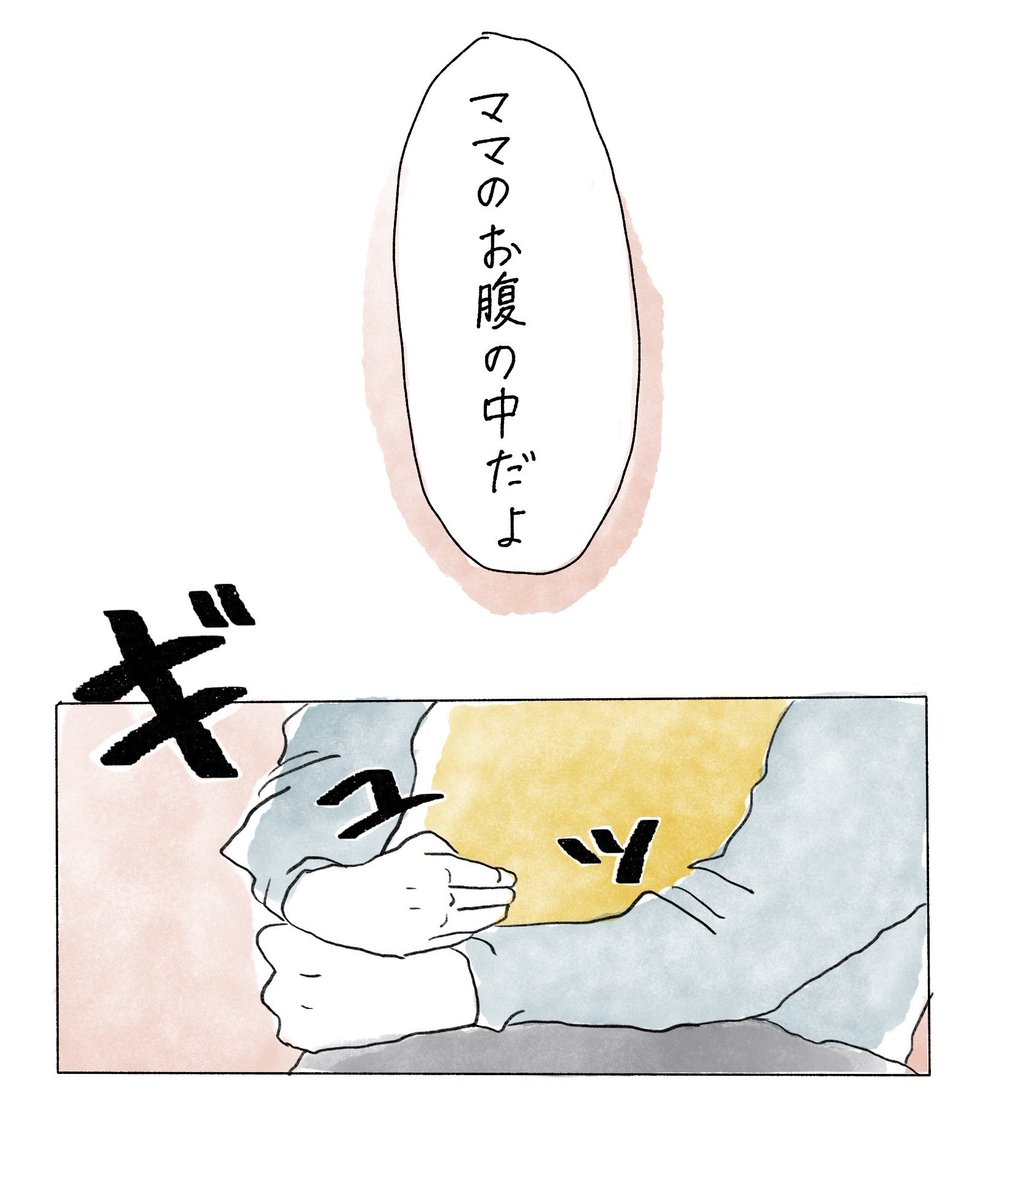 「胎内記憶」(修正・再掲載)
#漫画が読めるハッシュタグ #育児漫画 
(1/2) 